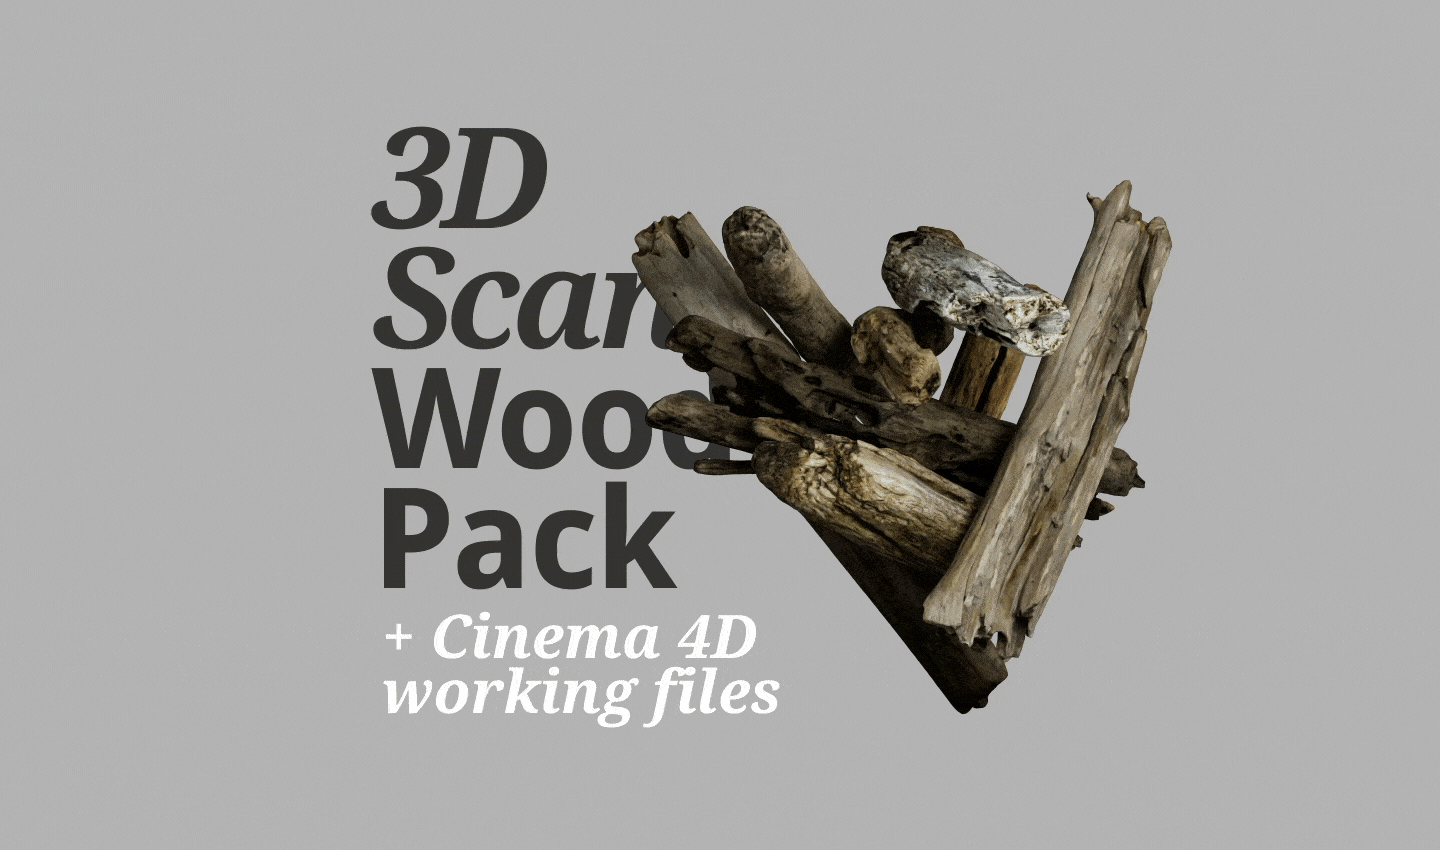 3D Scan Wood Pack 3d 3dscan assets blender cinema4d free gumroad motion graphics redshift substance painter substance sampler